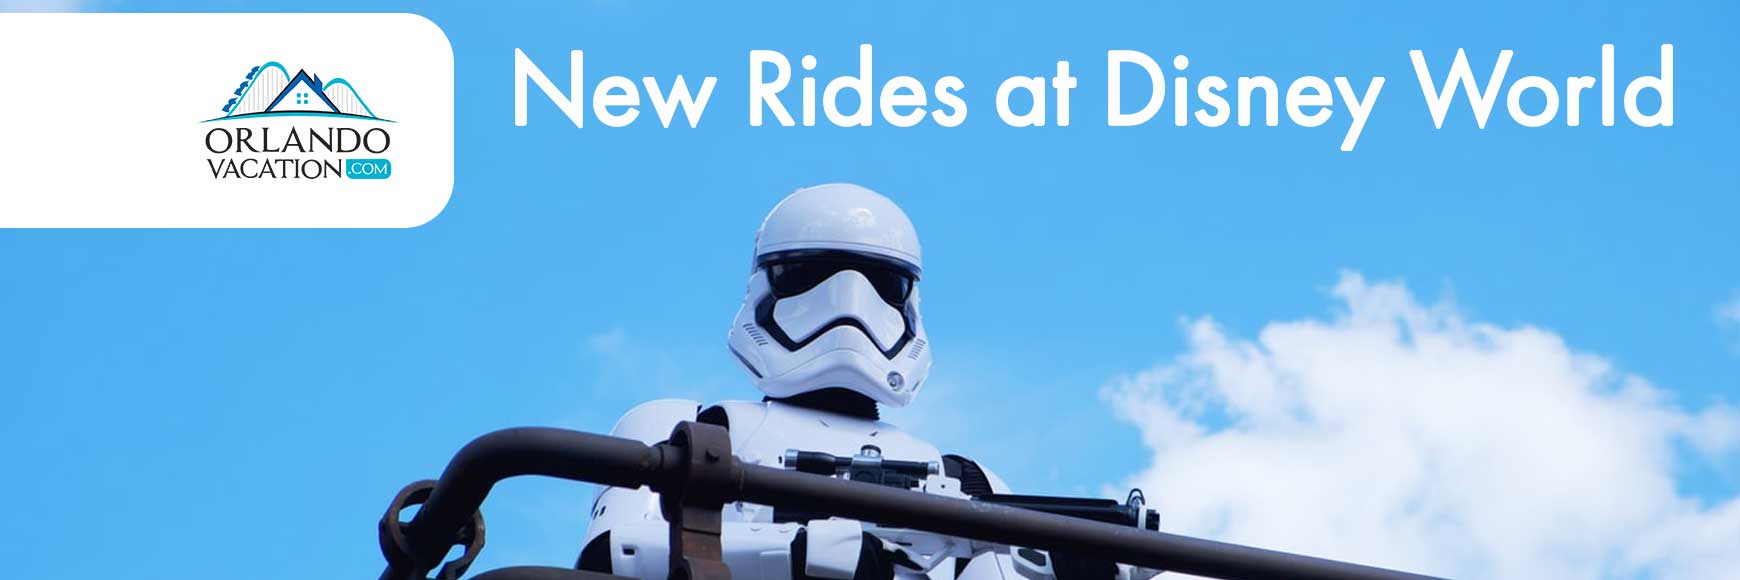 New Rides at Disney